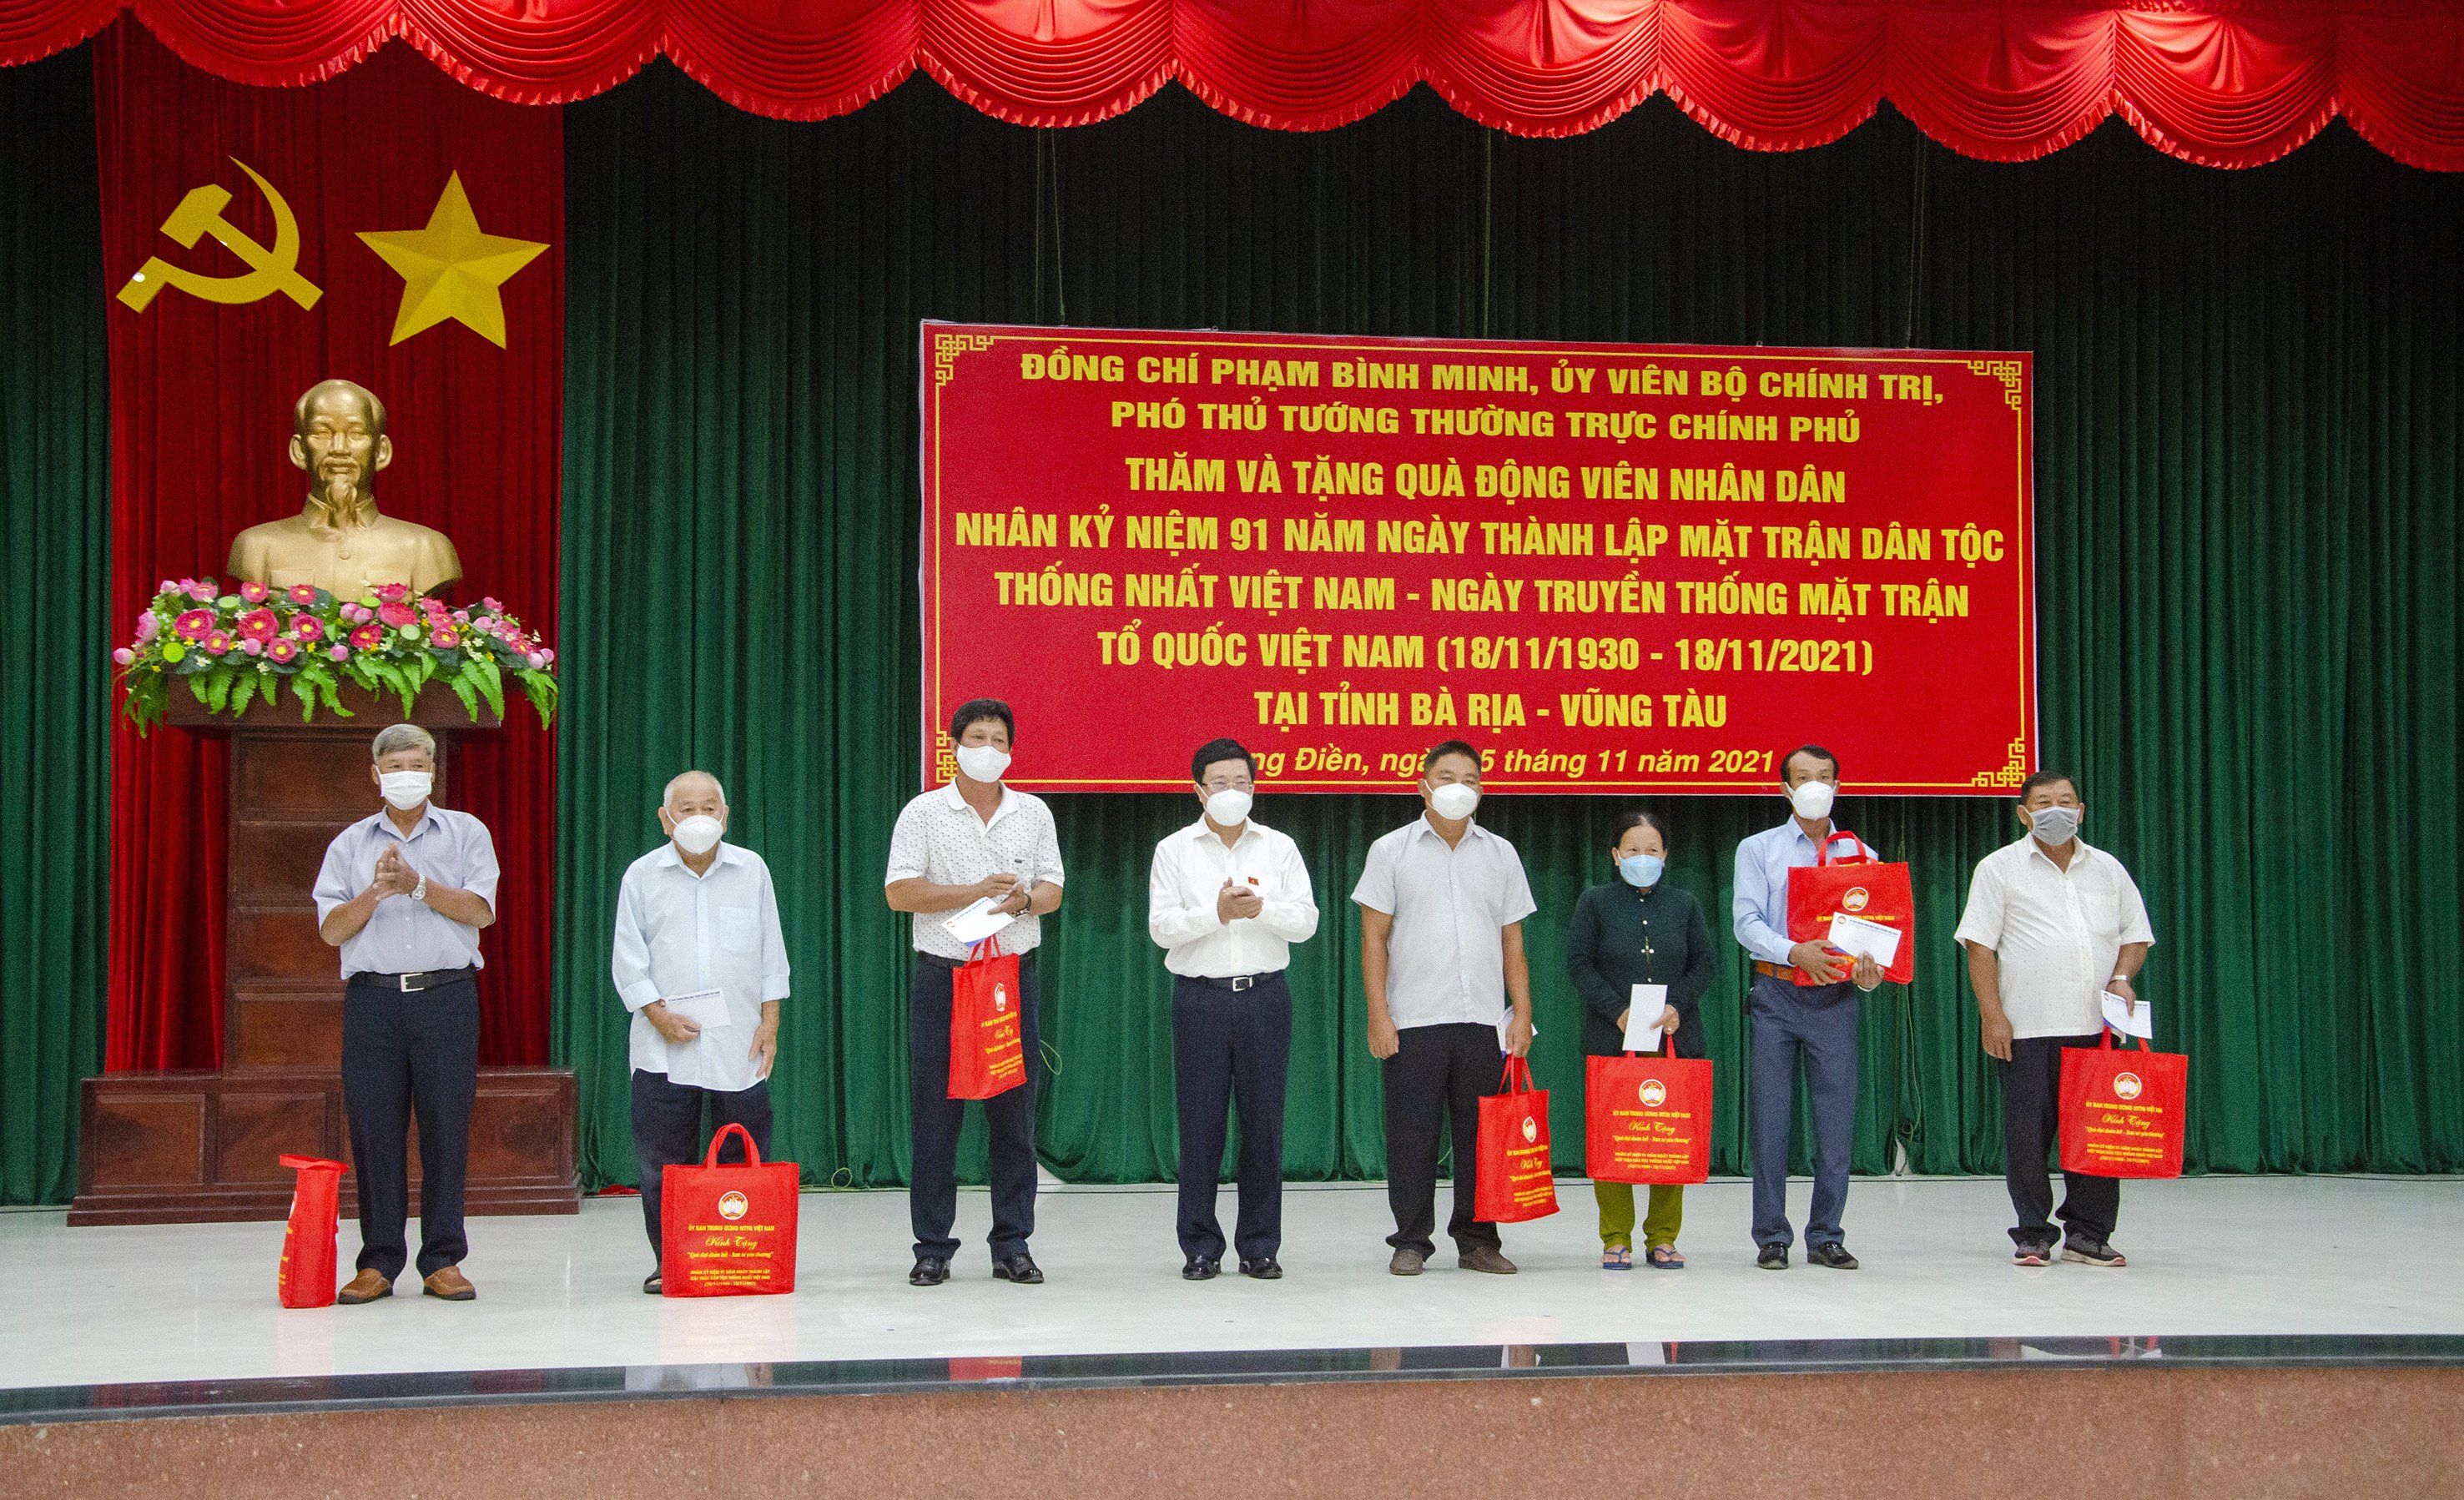 Ông Phạm Bình Minh, Ủy viên Bộ Chính trị, Phó Thủ tướng Thường trực Chính phủ, ĐBQH tỉnh BR-VT khóa XV (thứ tư từ trái qua) biểu dương và tặng quà các hộ gia đình tiêu biểu, tích cực tham gia phòng, chống dịch COVID-19.